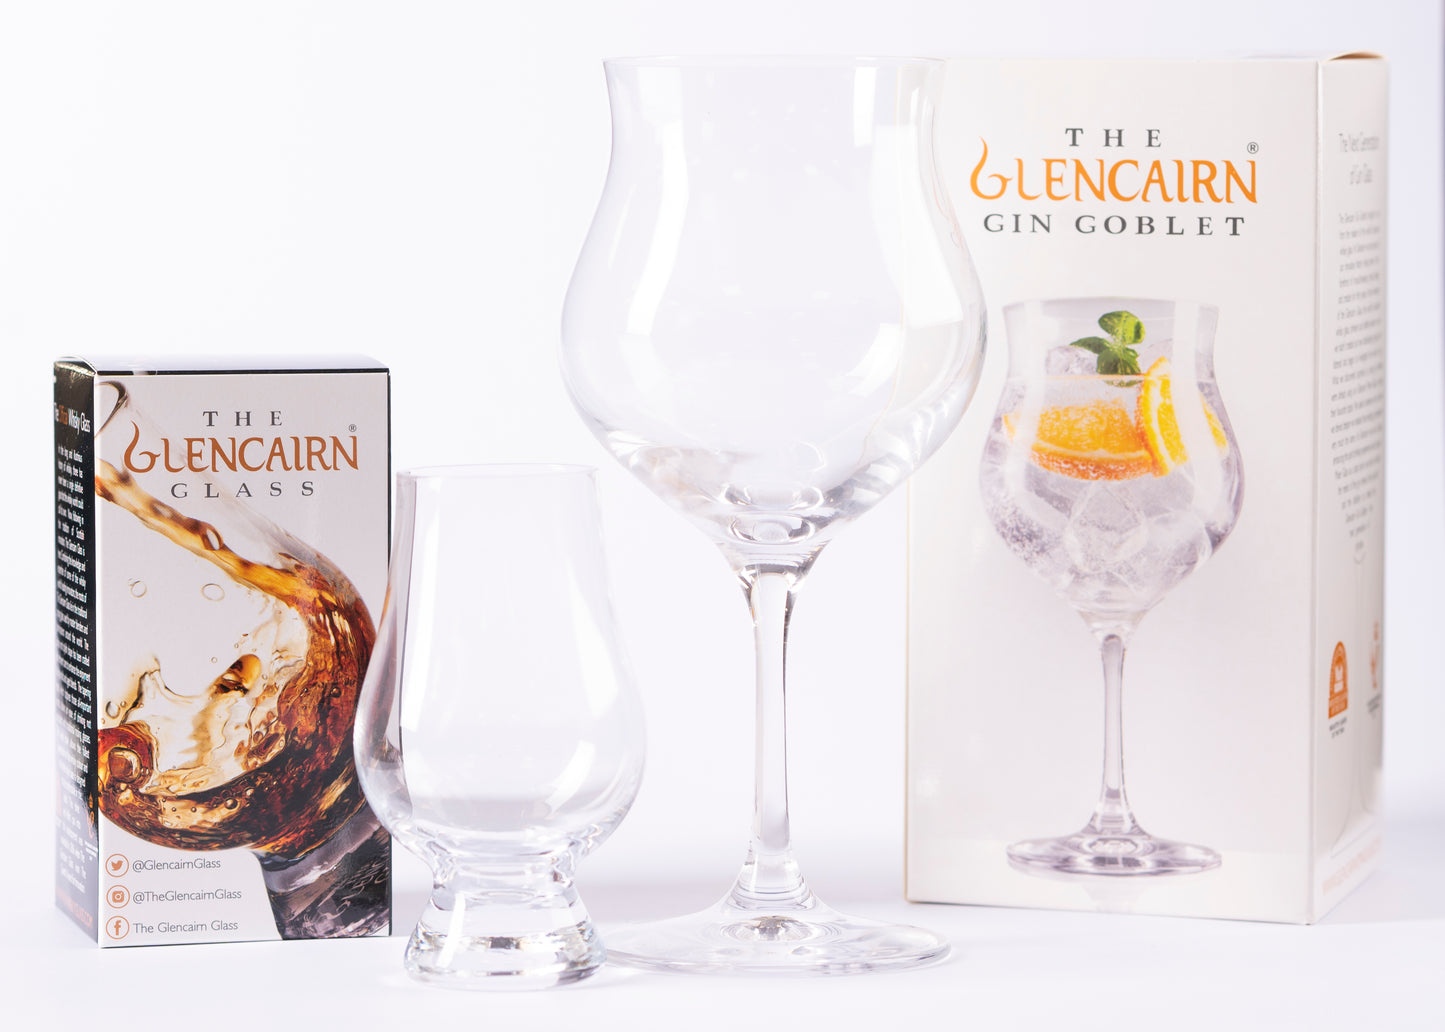 The Glencairn Gin Goblet